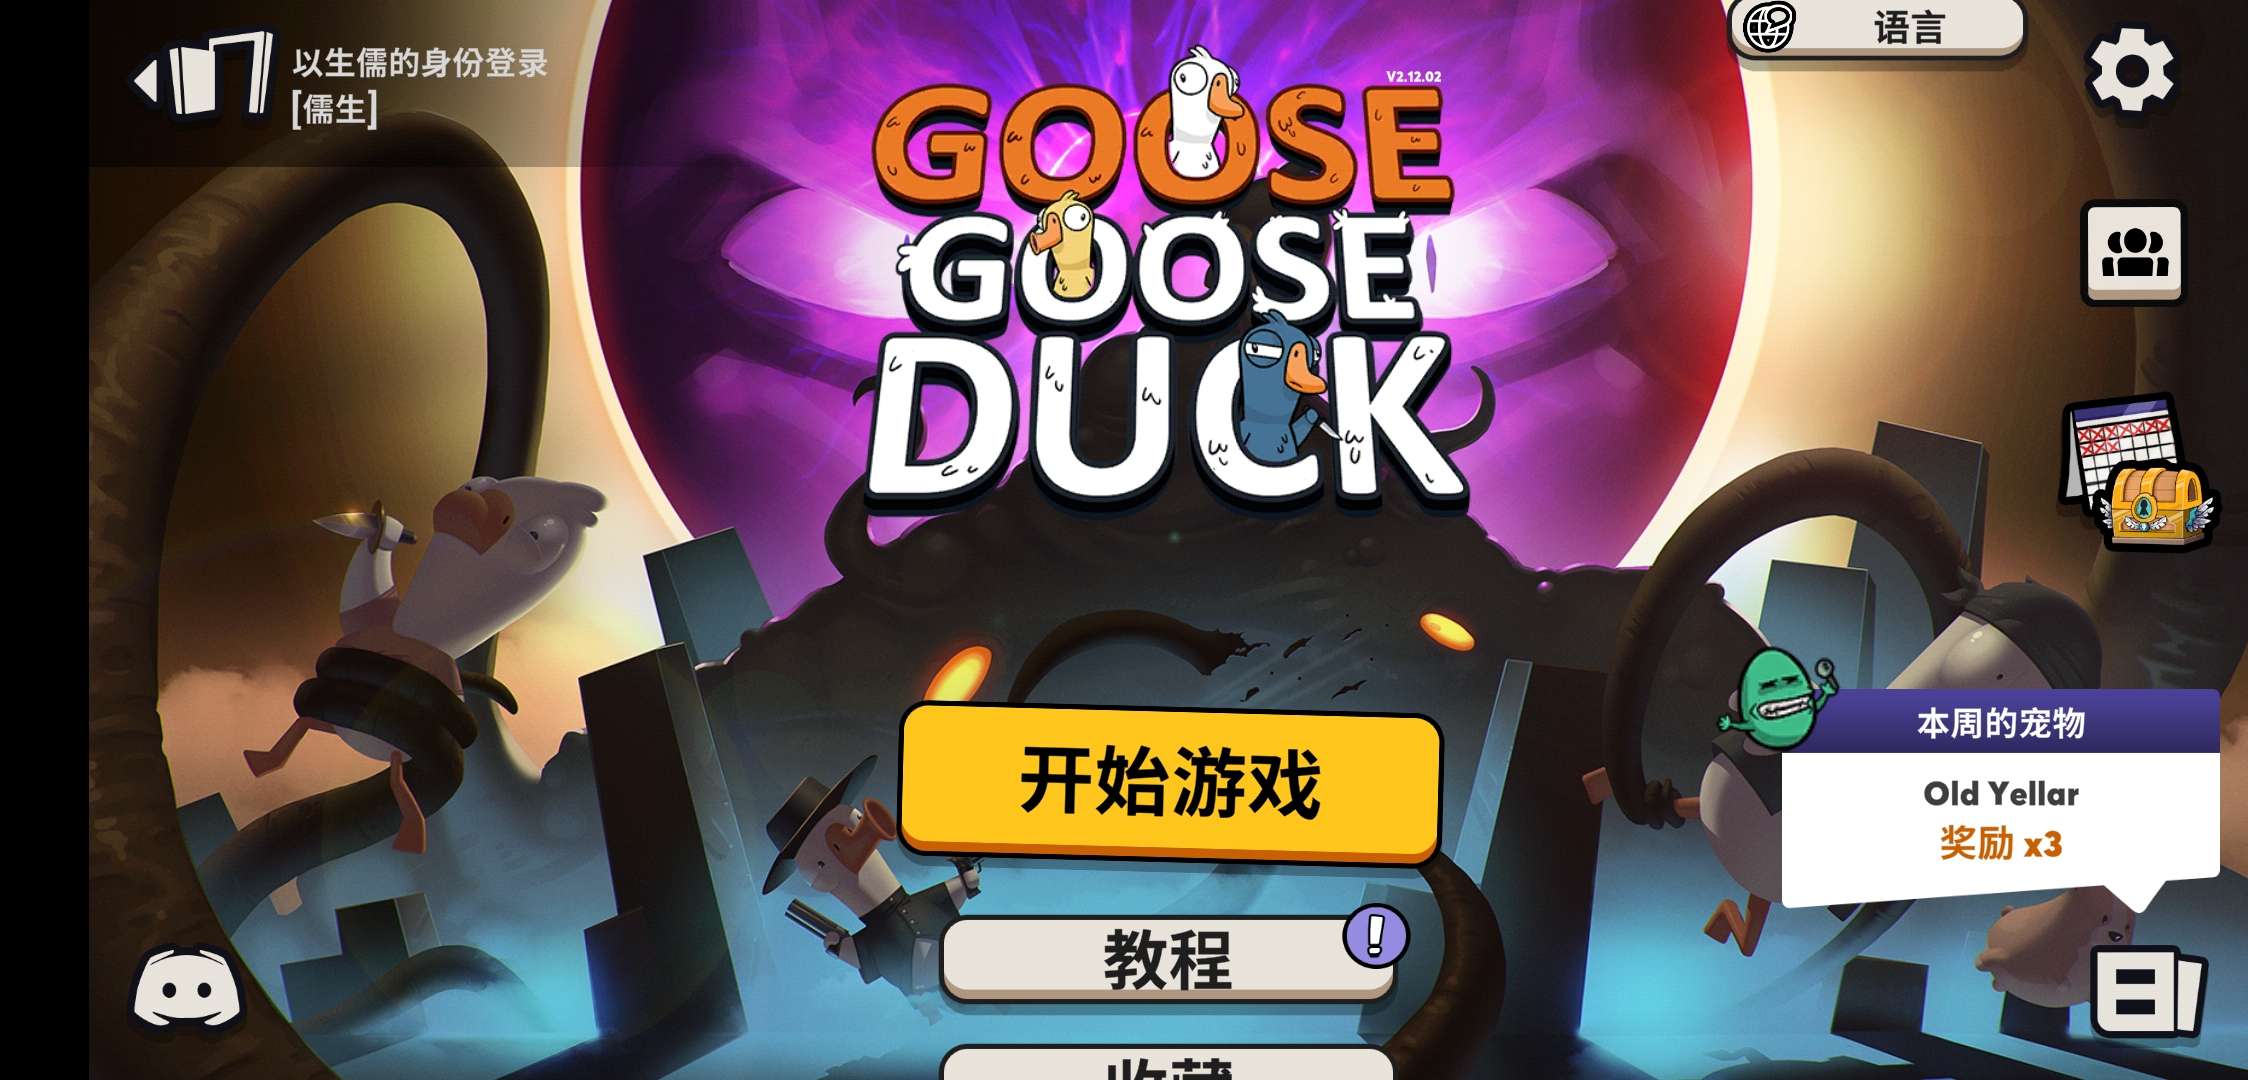 鹅鸭杀手游汉化版(Goose Goose Duck)v2.24.01 联机版截图2